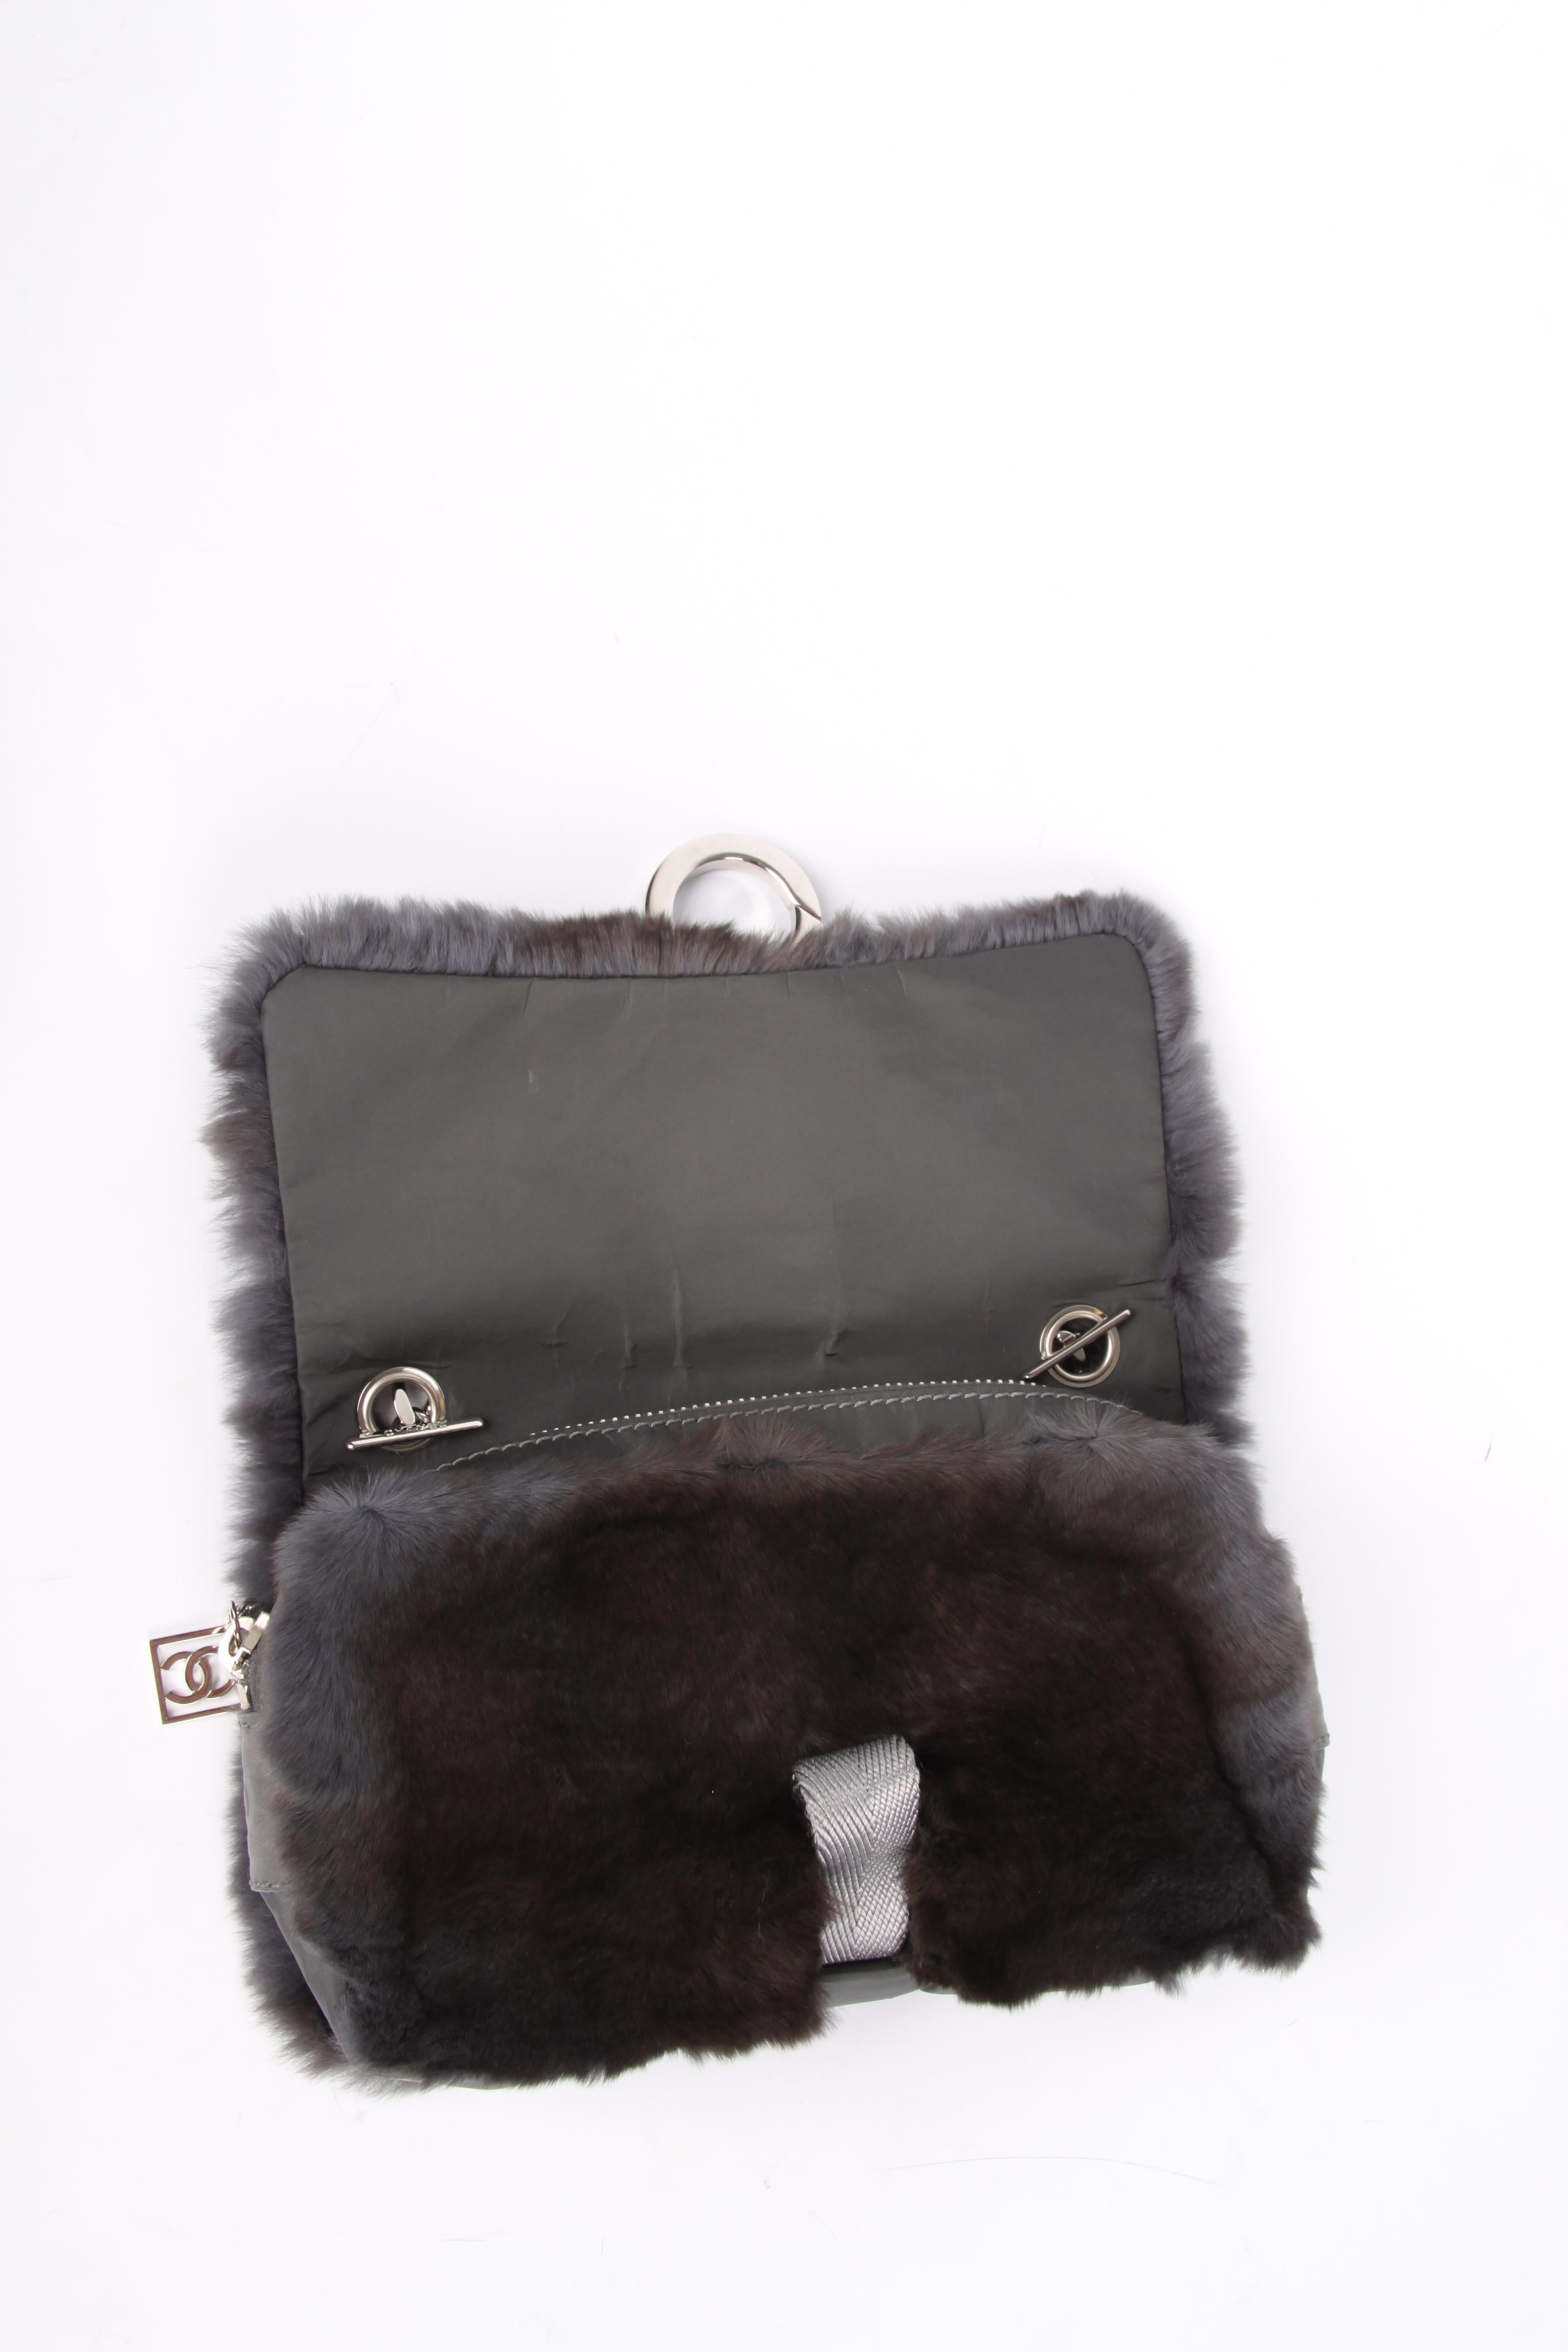 Chanel Classic Bag Feston Stitch - dark grey 1